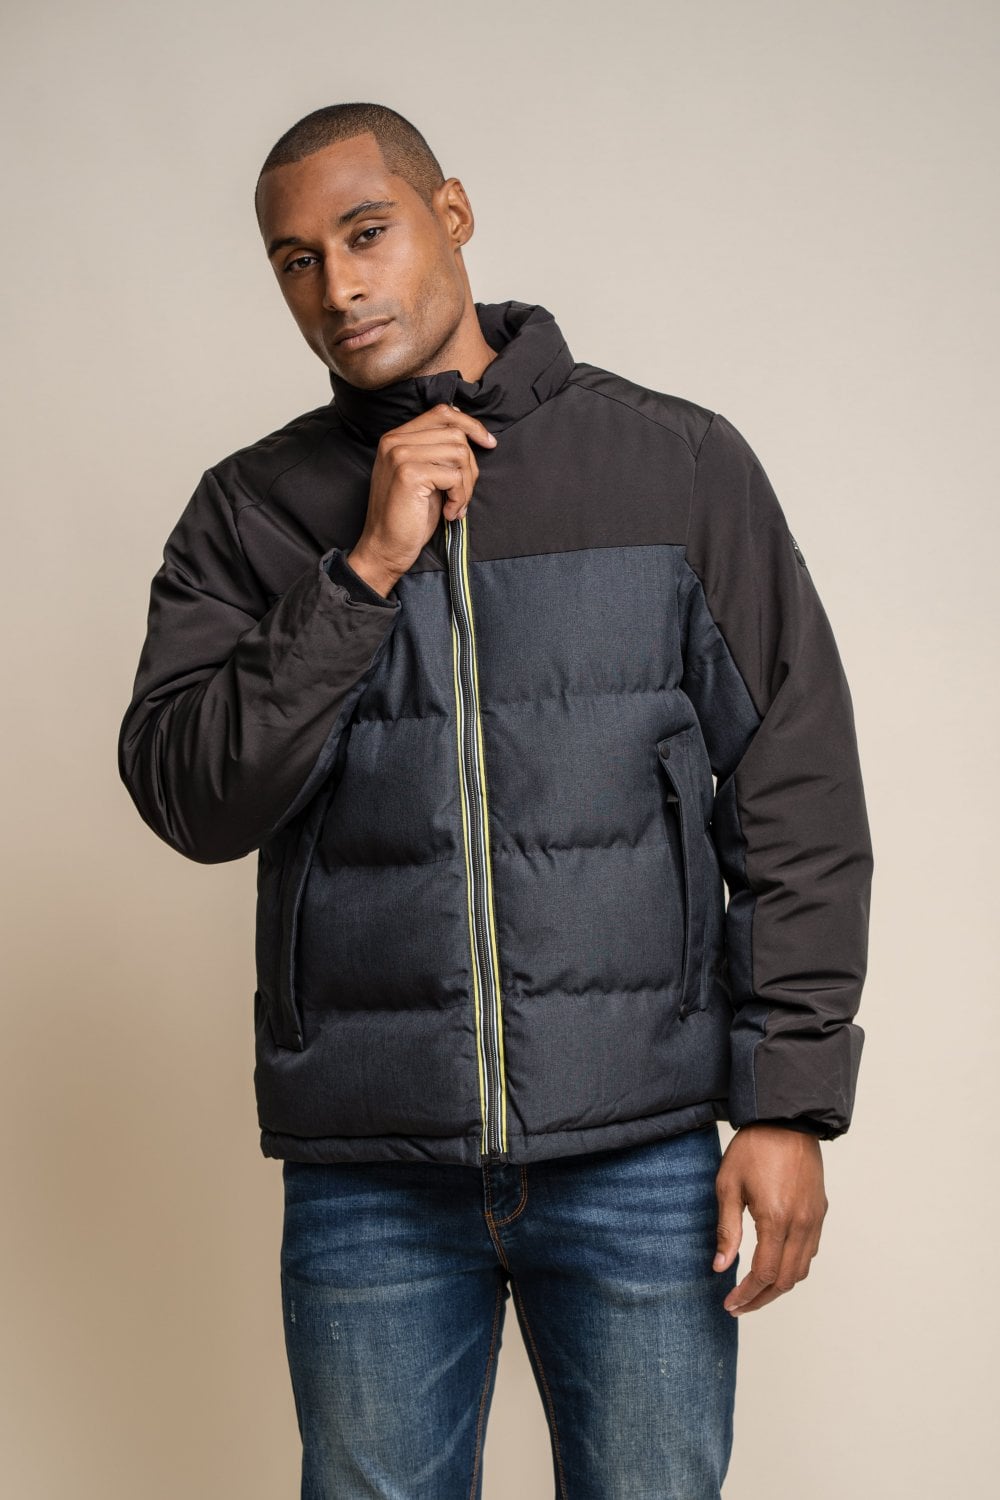 Farros Charcoal Jacket - Coats - S - THREADPEPPER